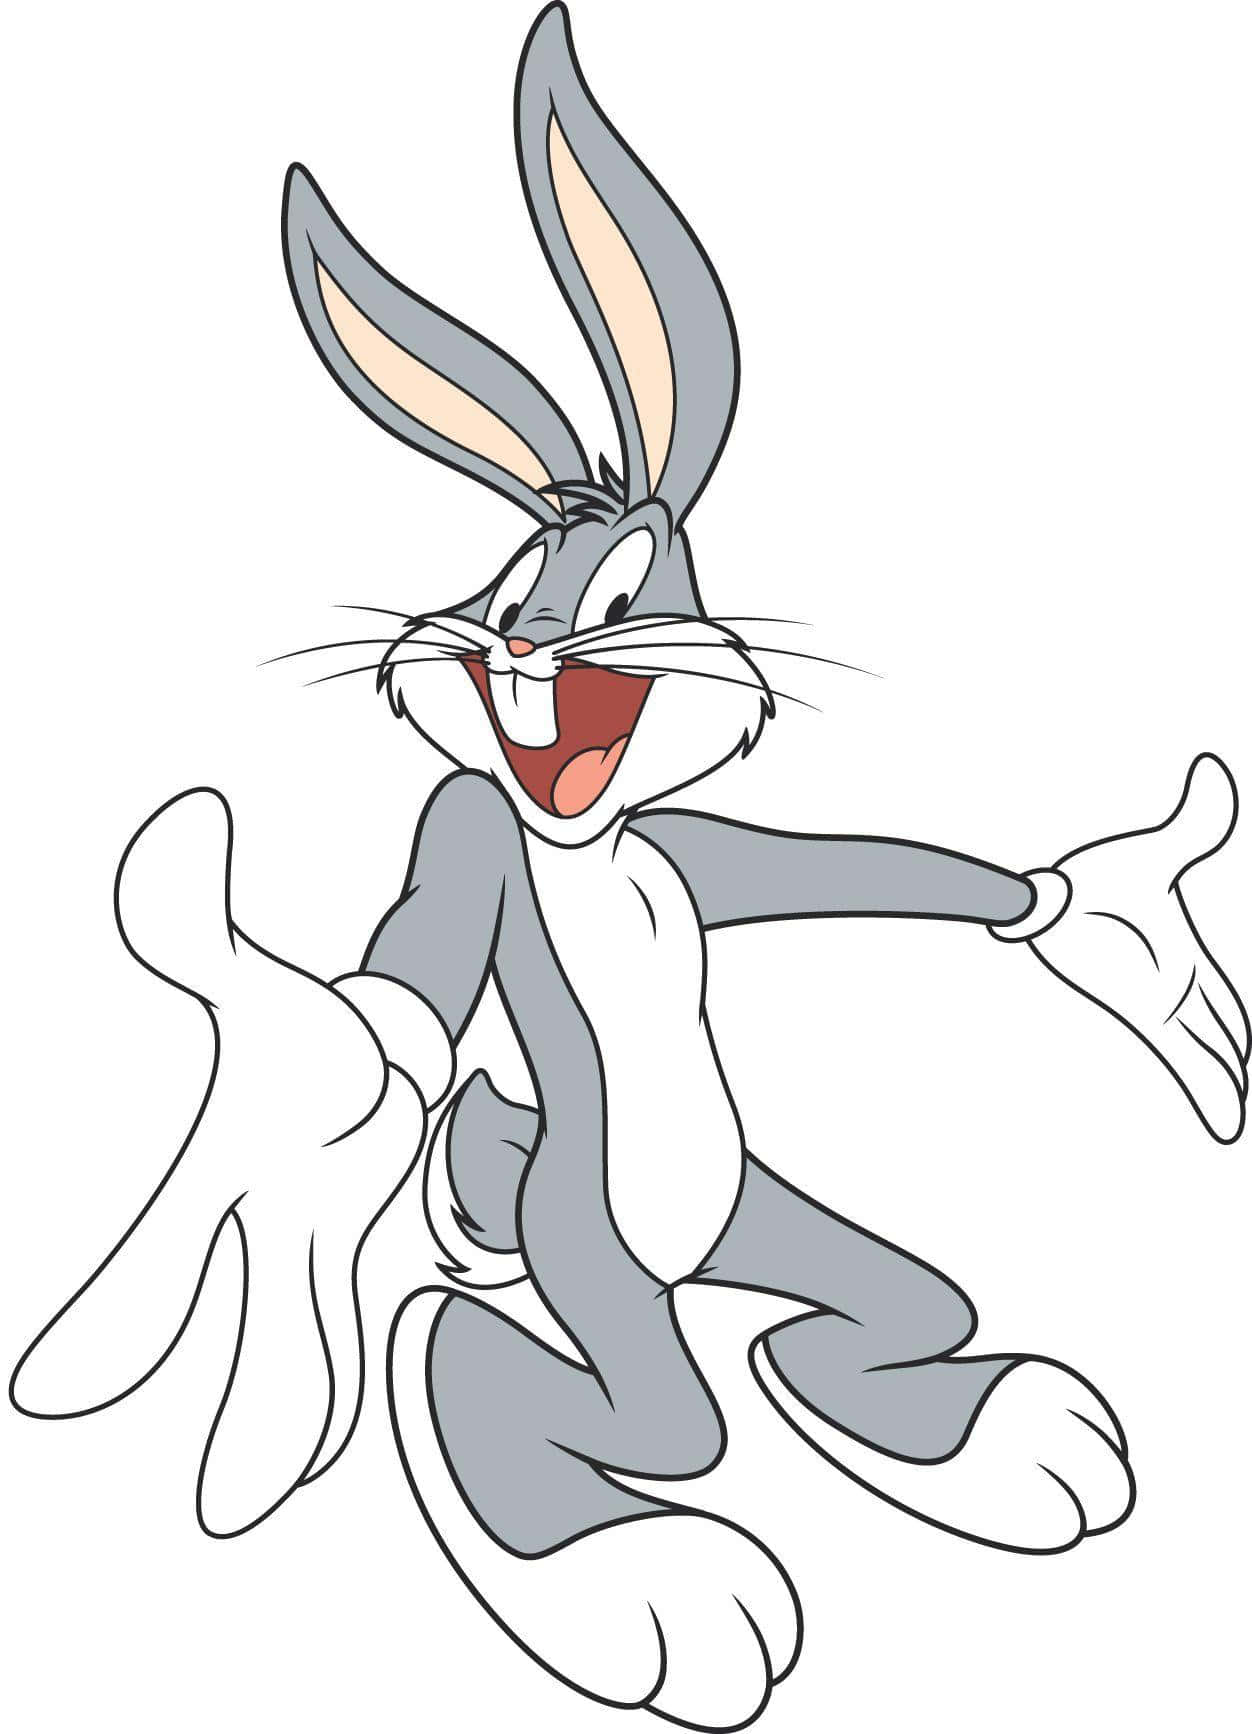 Ilconiglietto Preferito Di Tutti, Bugs Bunny